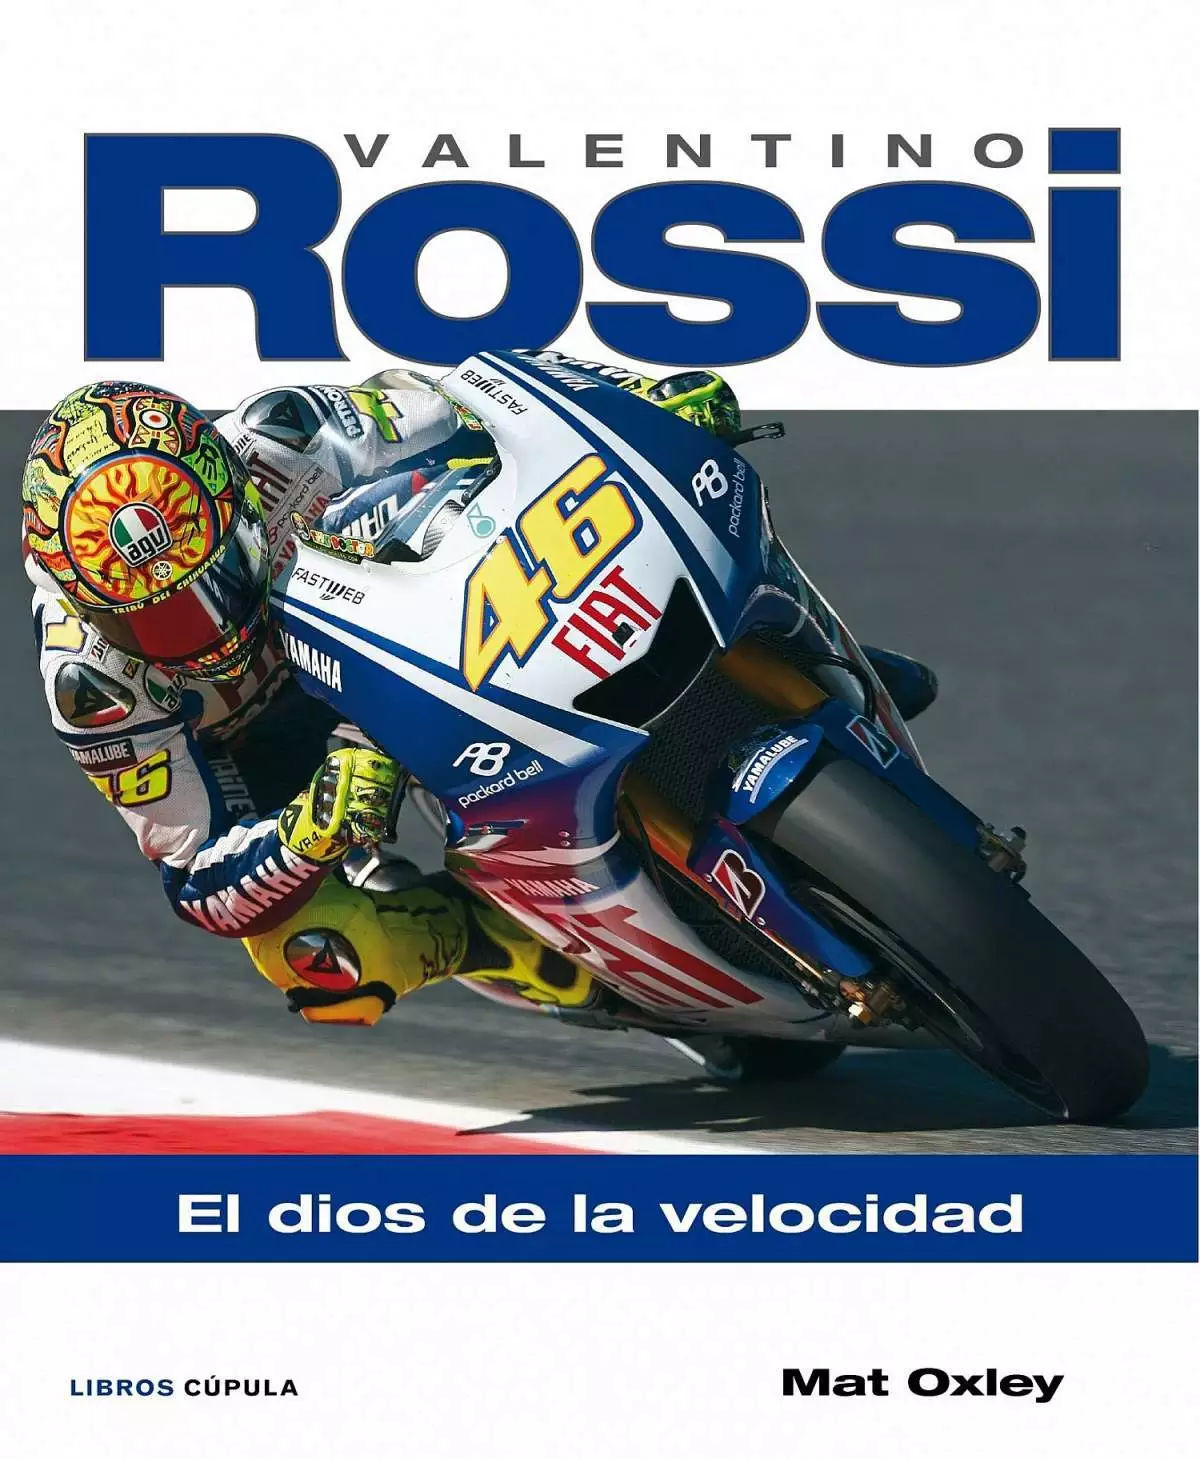 Valentino Rossi, dios de la velocidad